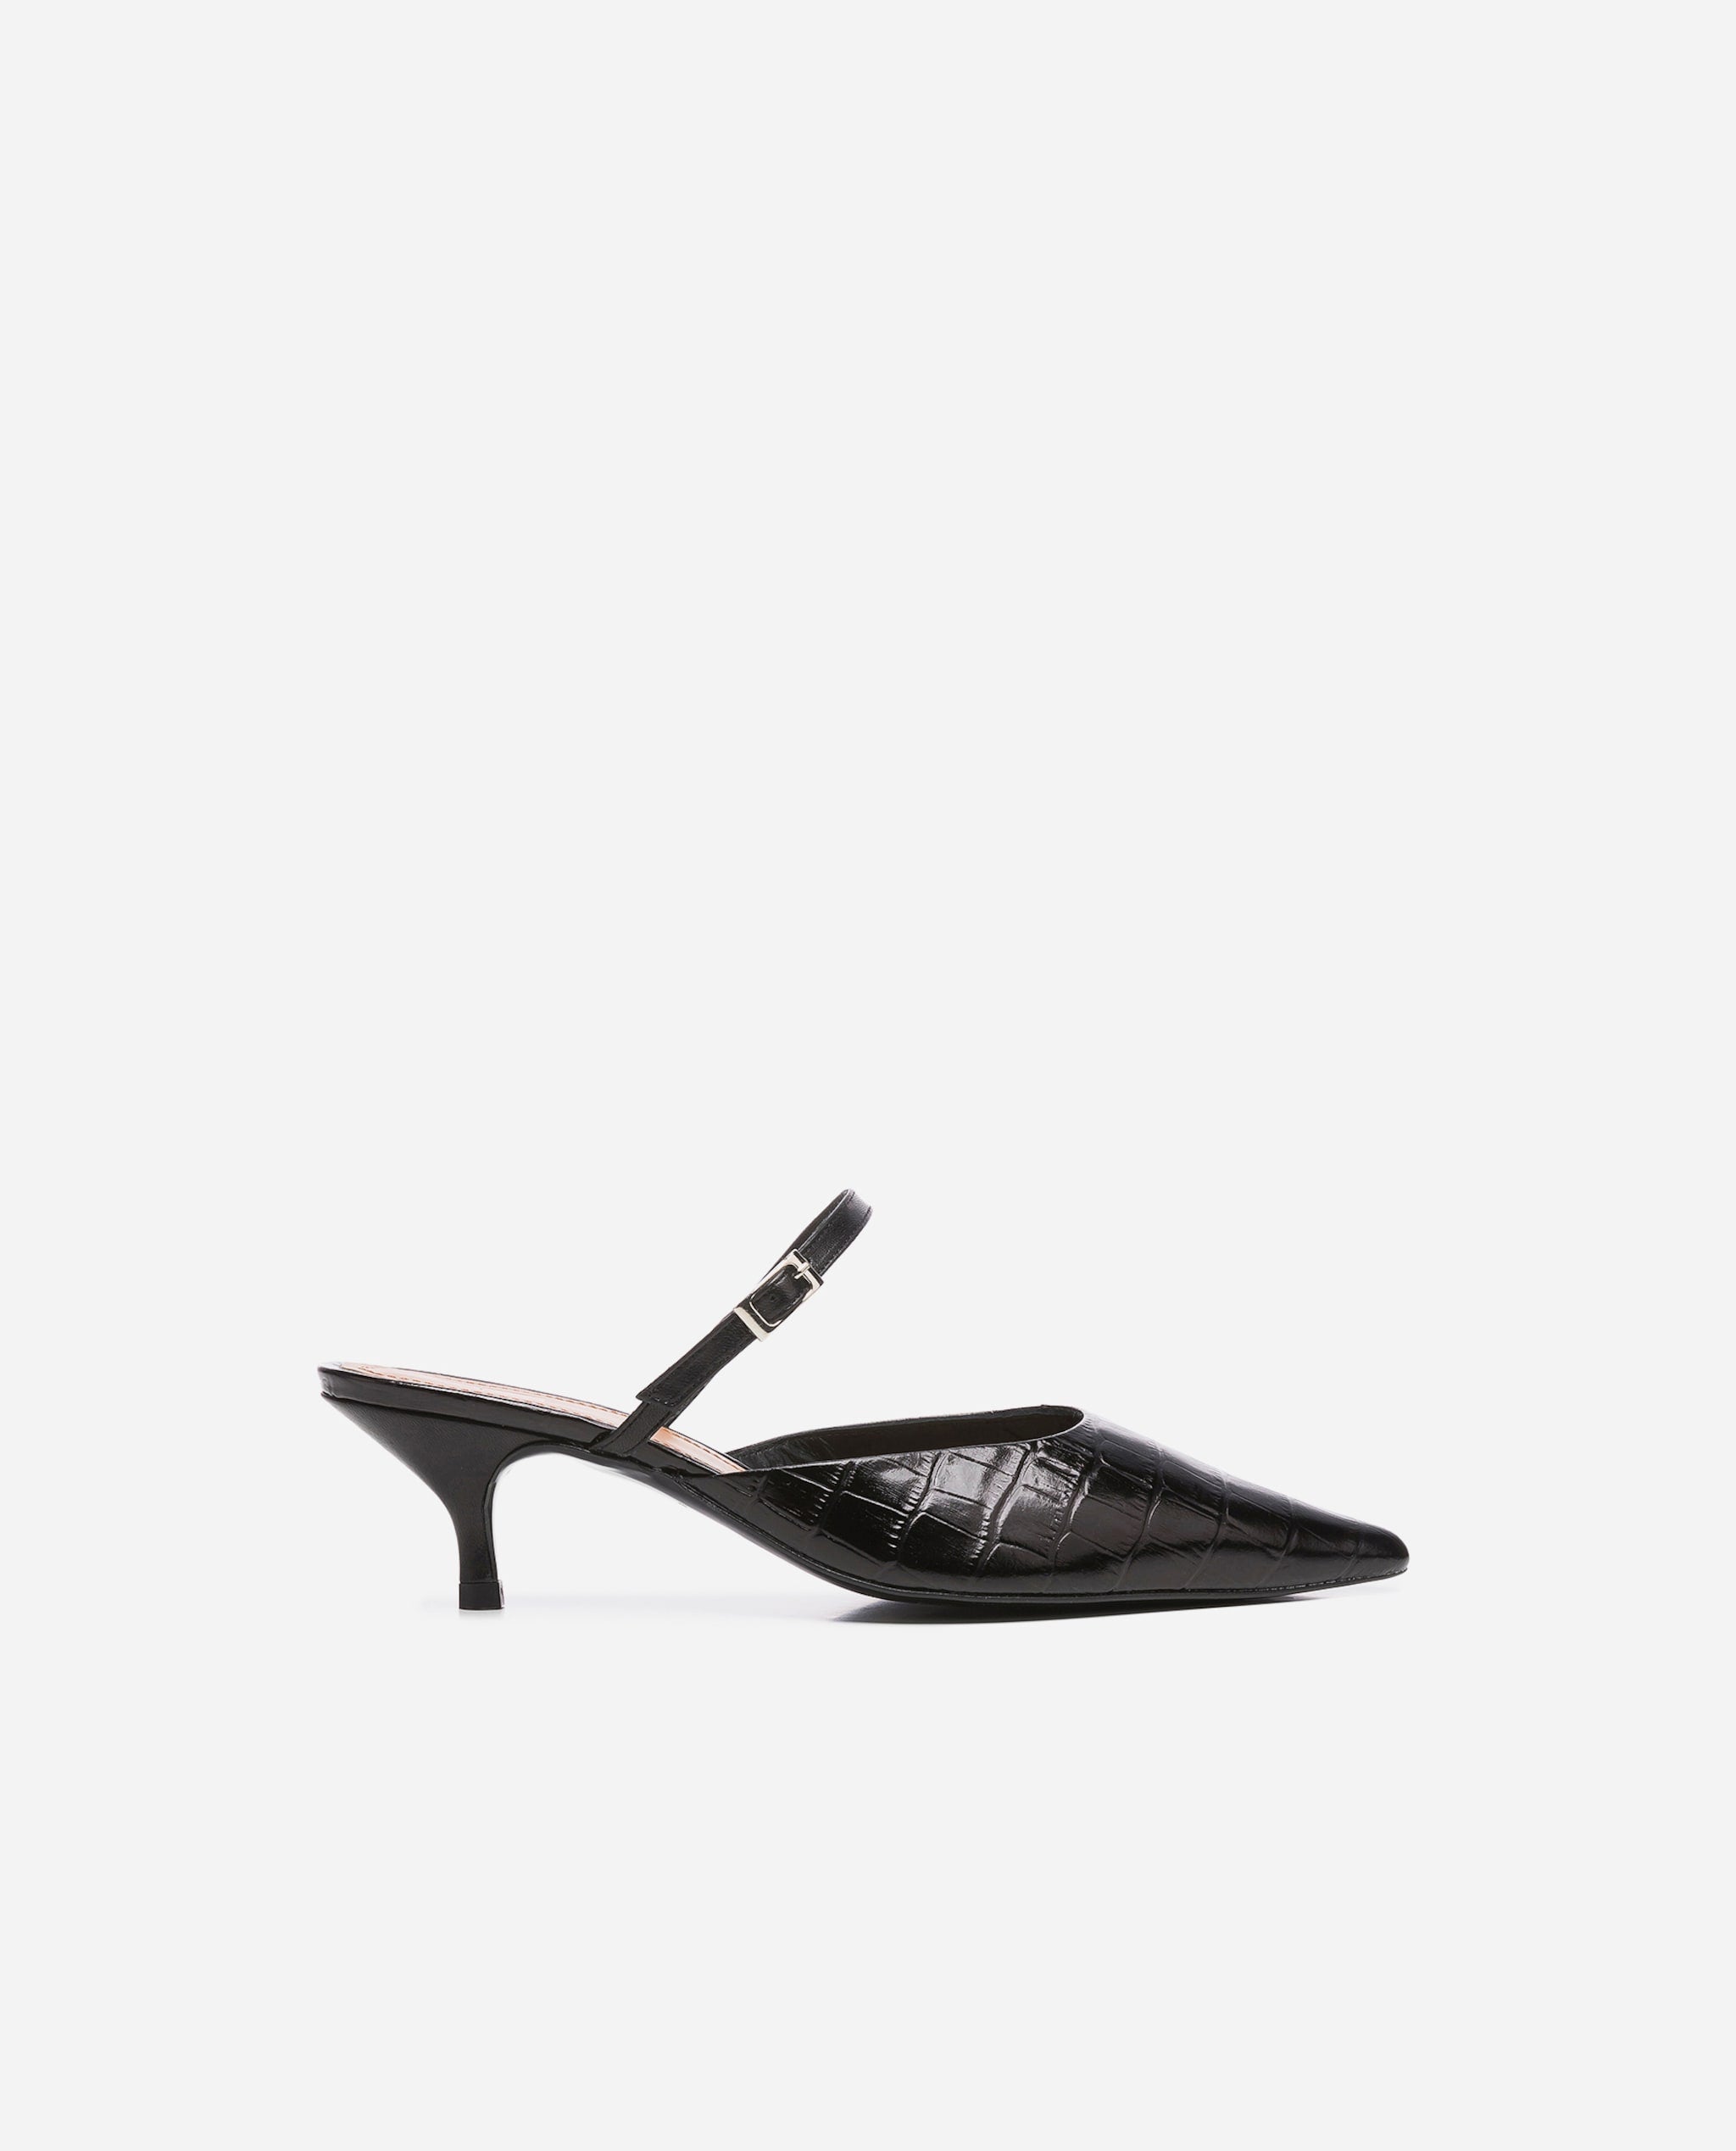 Hilda Croco Leather Black Mule Shoes Heels 20010411817-001 - 6